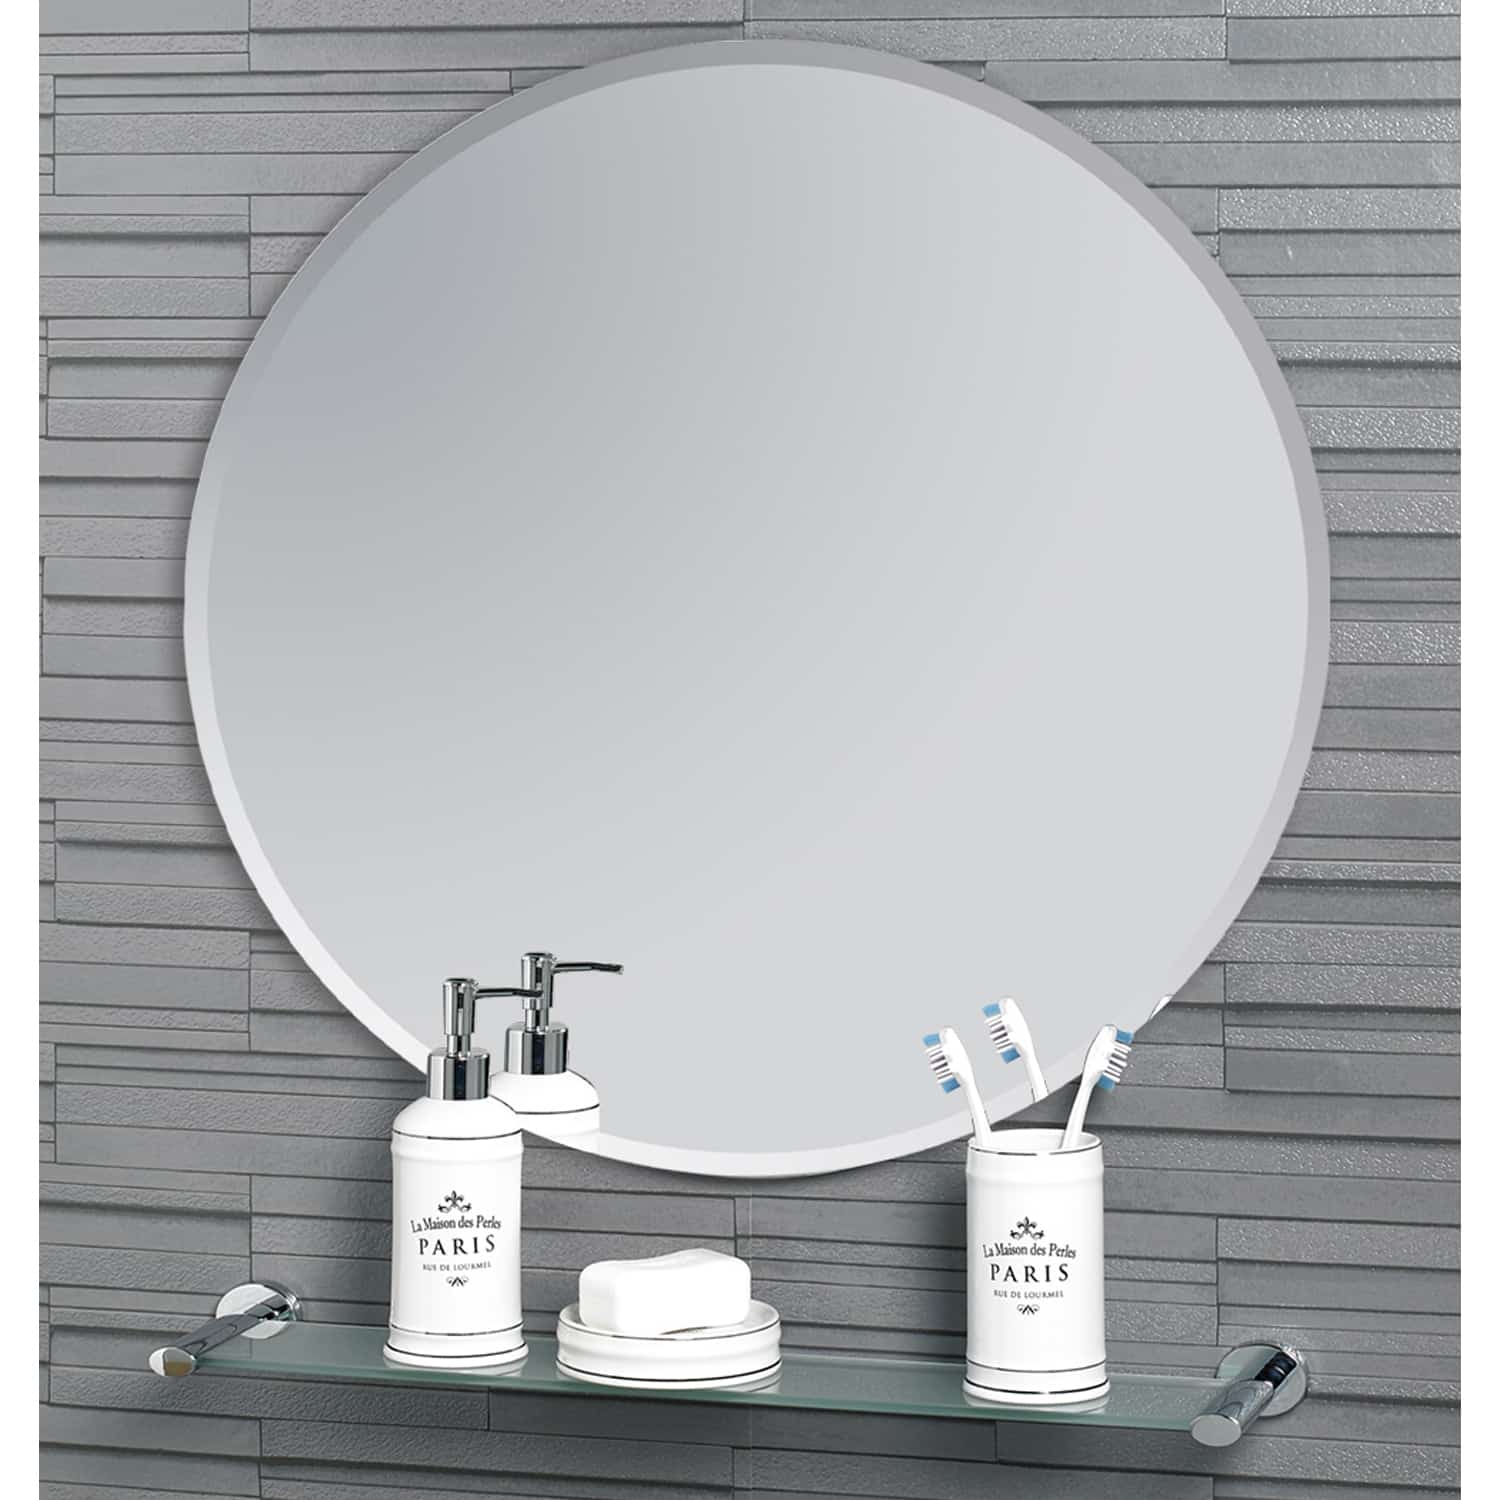 Fitzrovia Round Mirror 45cm | Showerdrape